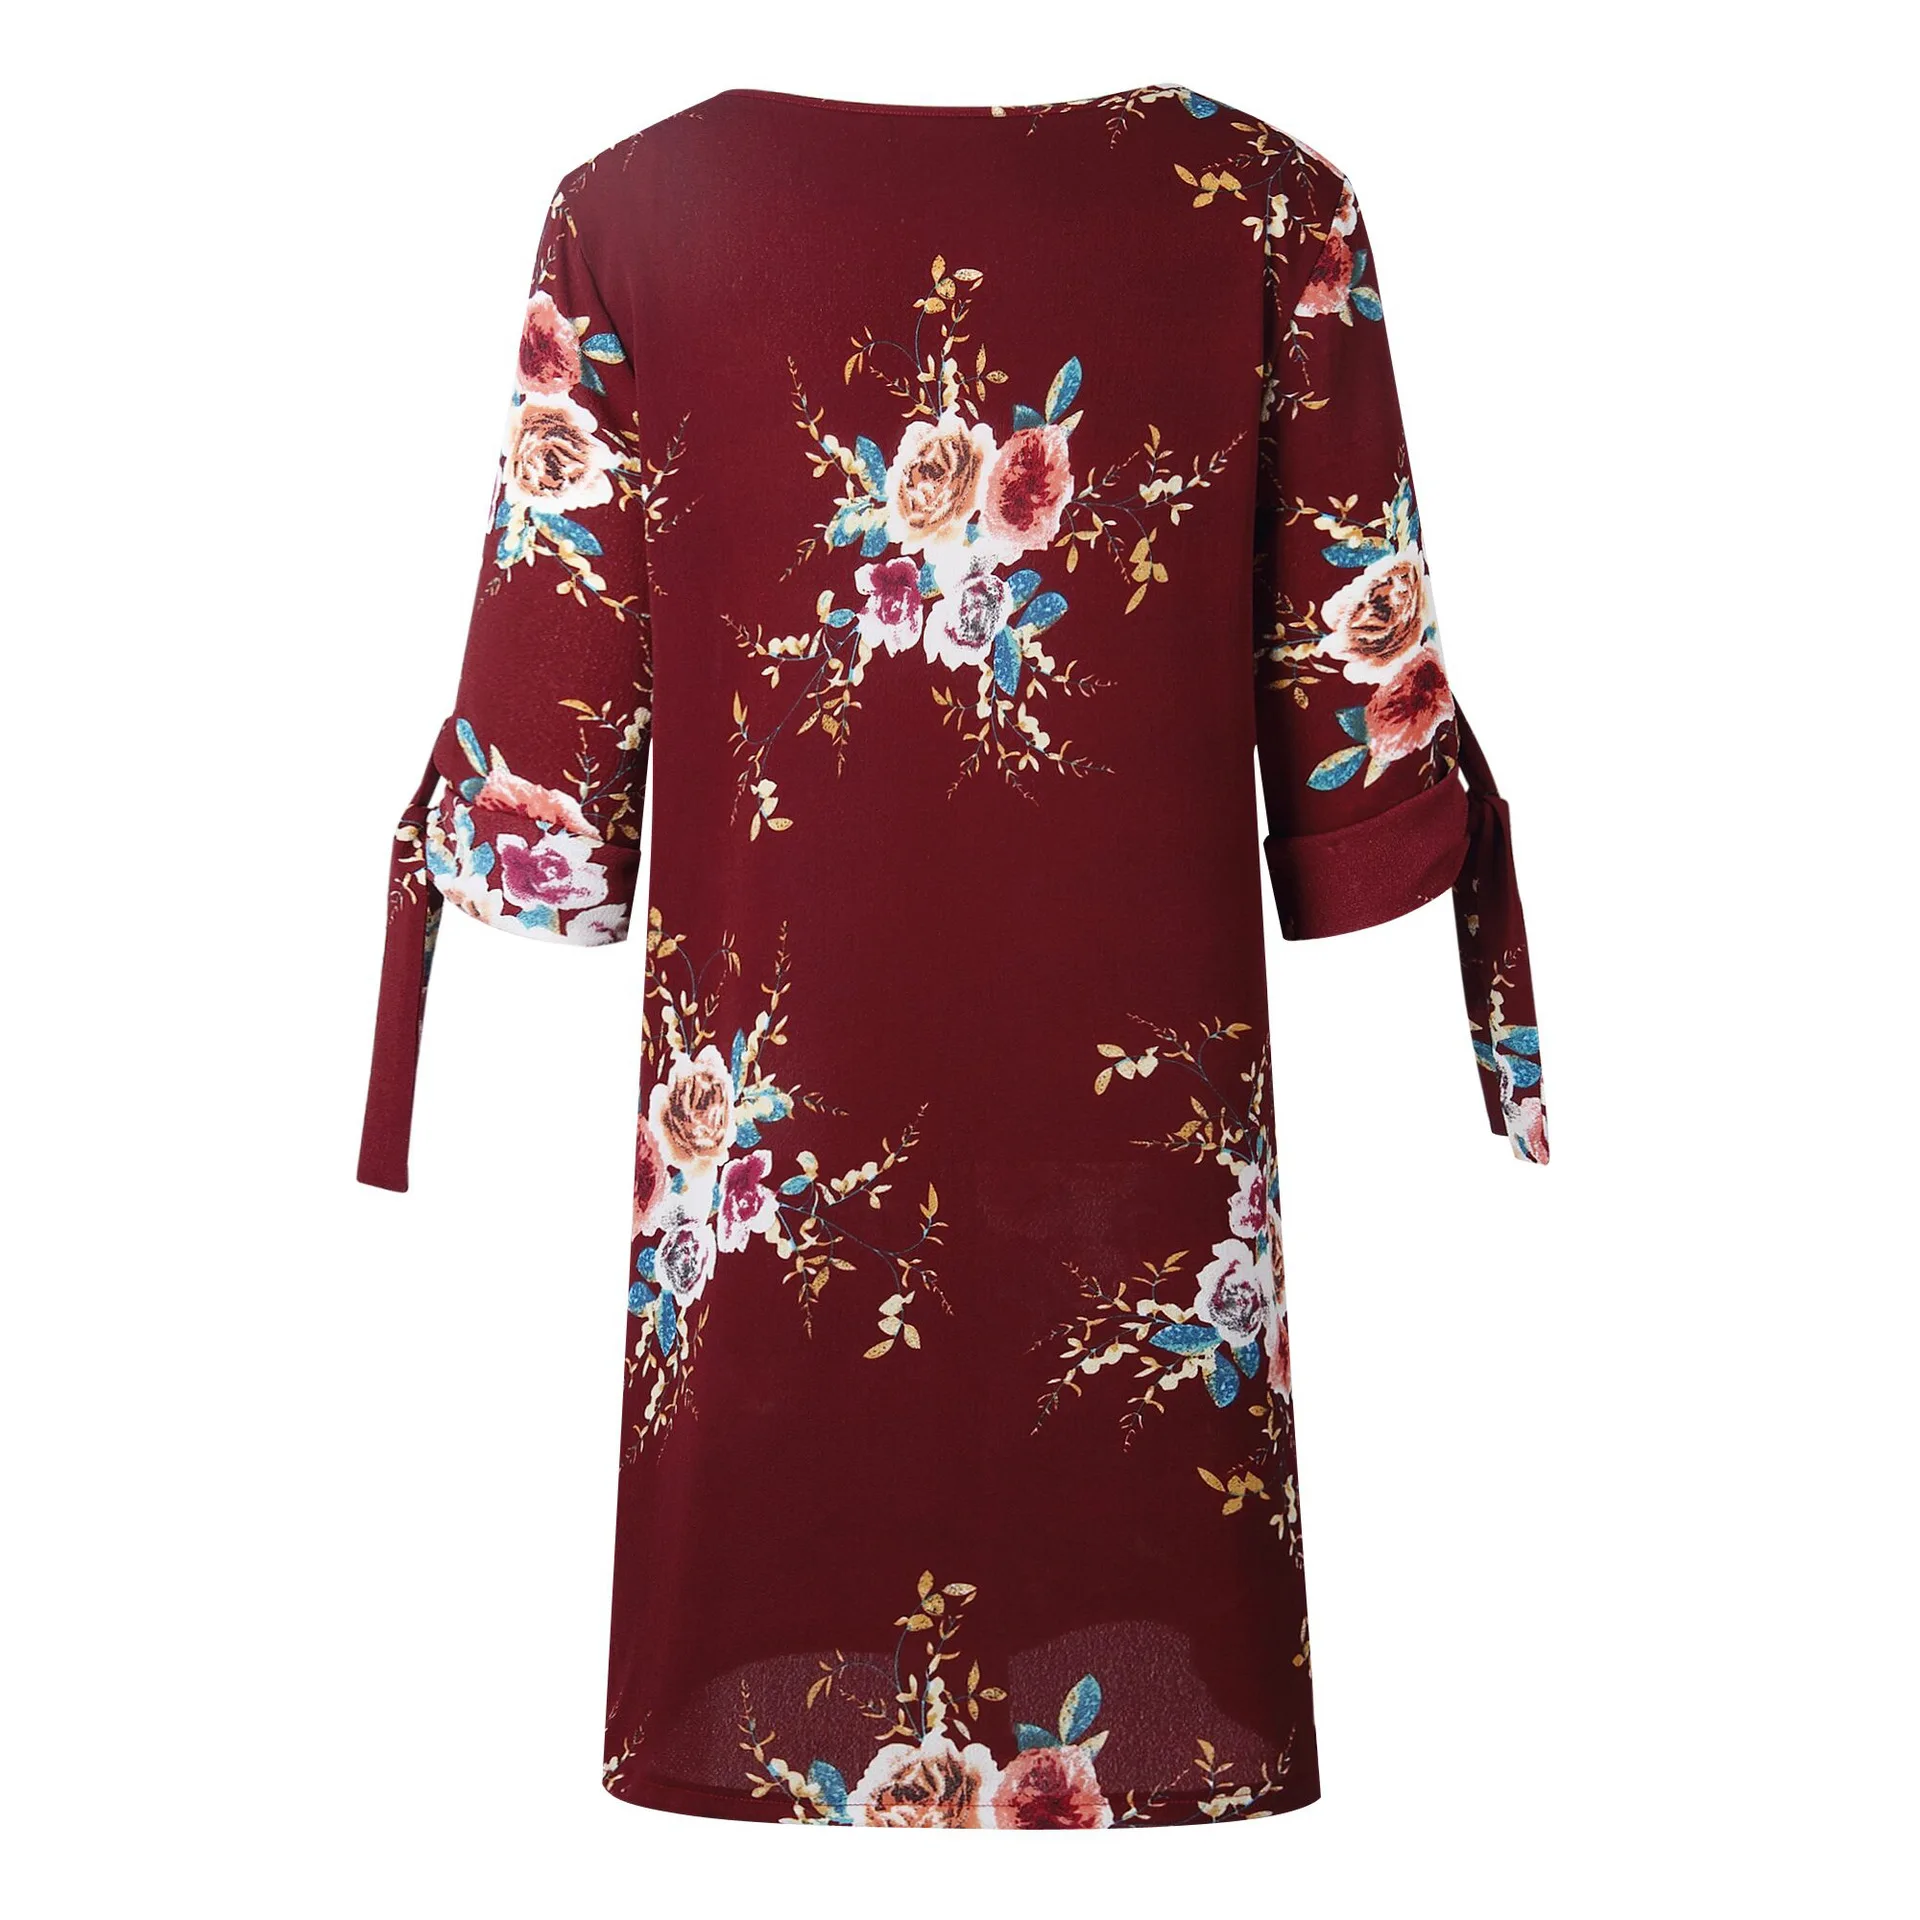 Для женщин летнее платье Boho Стиль Цветочный принт шифоновое пляжное платье Туника Сарафан Свободные мини платье S-5XL